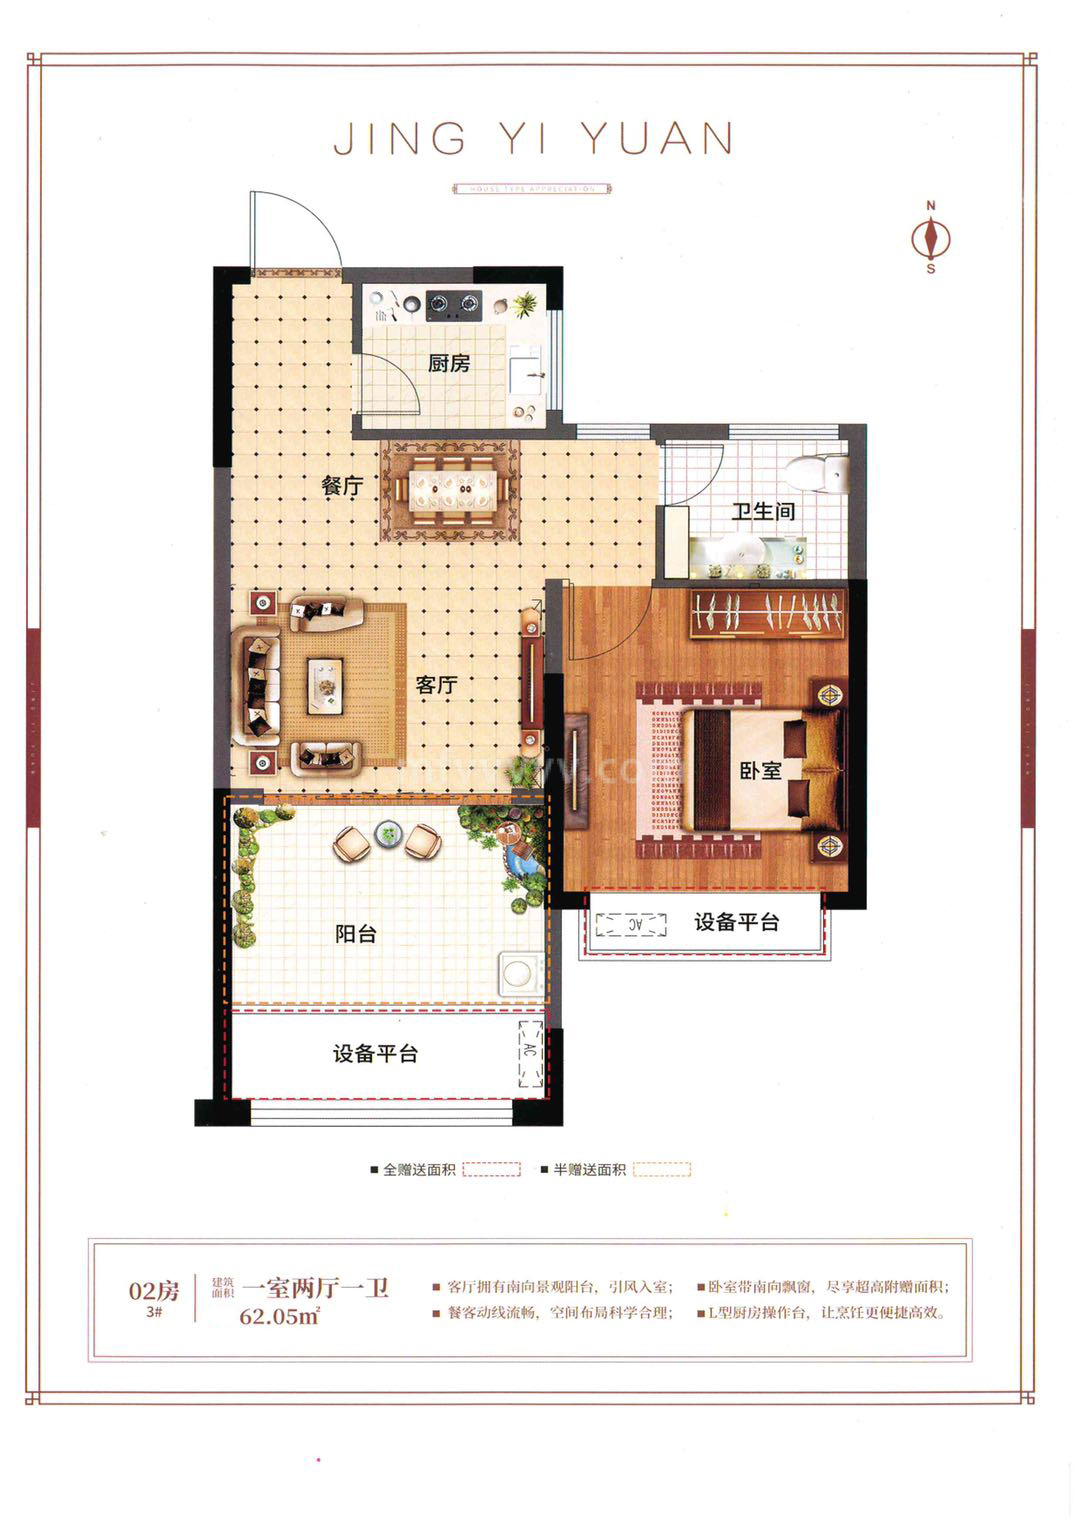 京艺源 高层 02户型 一室两厅一卫 建筑面积62.05㎡